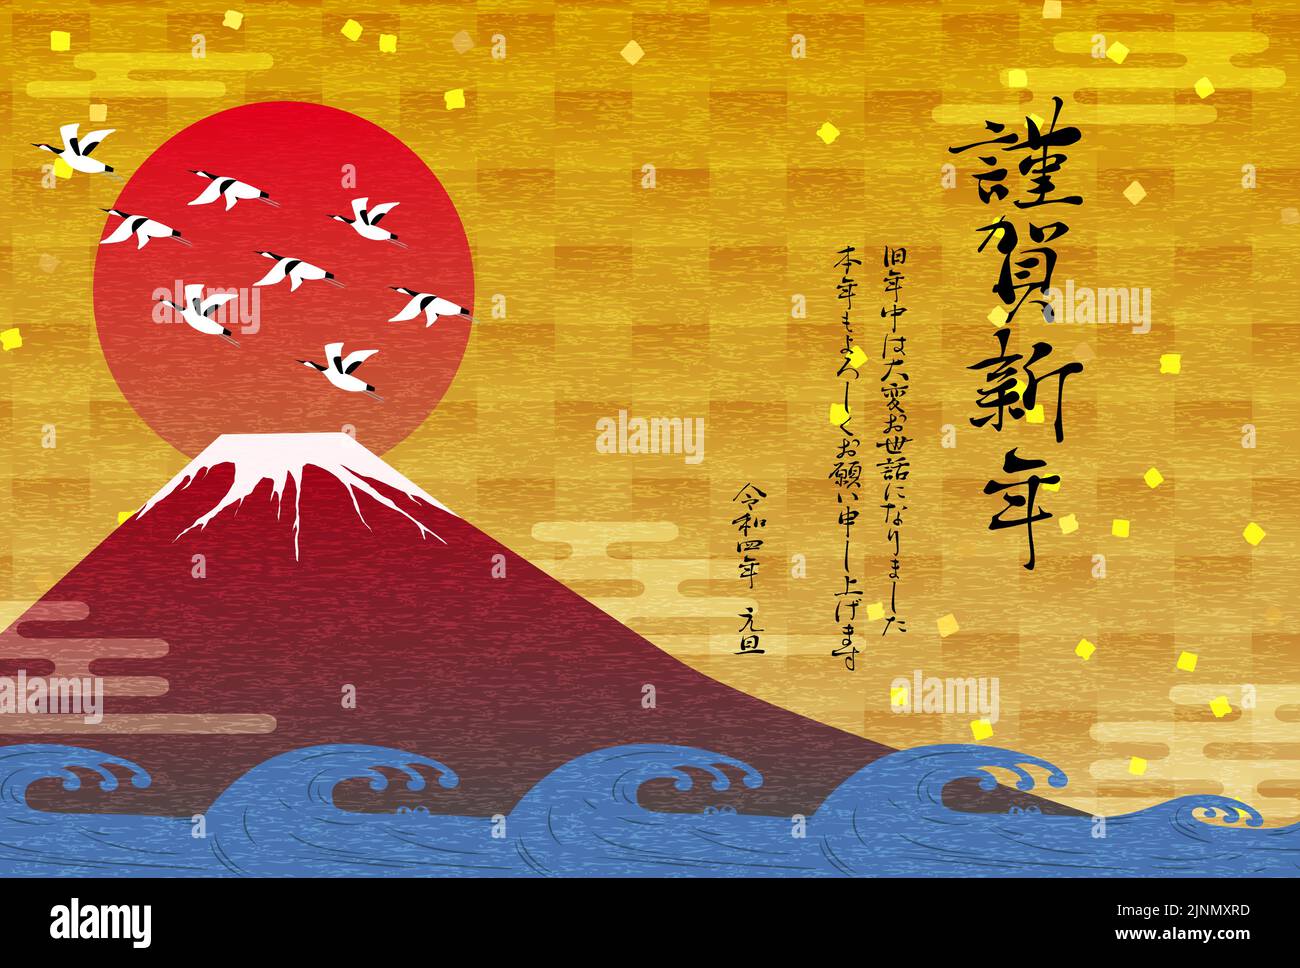 Red Fuji, Waves and Cranes: Neujahrsgrüßkarten für 2021 -Übersetzung: Vielen Dank für all Ihre Hilfe während des letzten Jahres, und ich freue mich auf w Stock Vektor